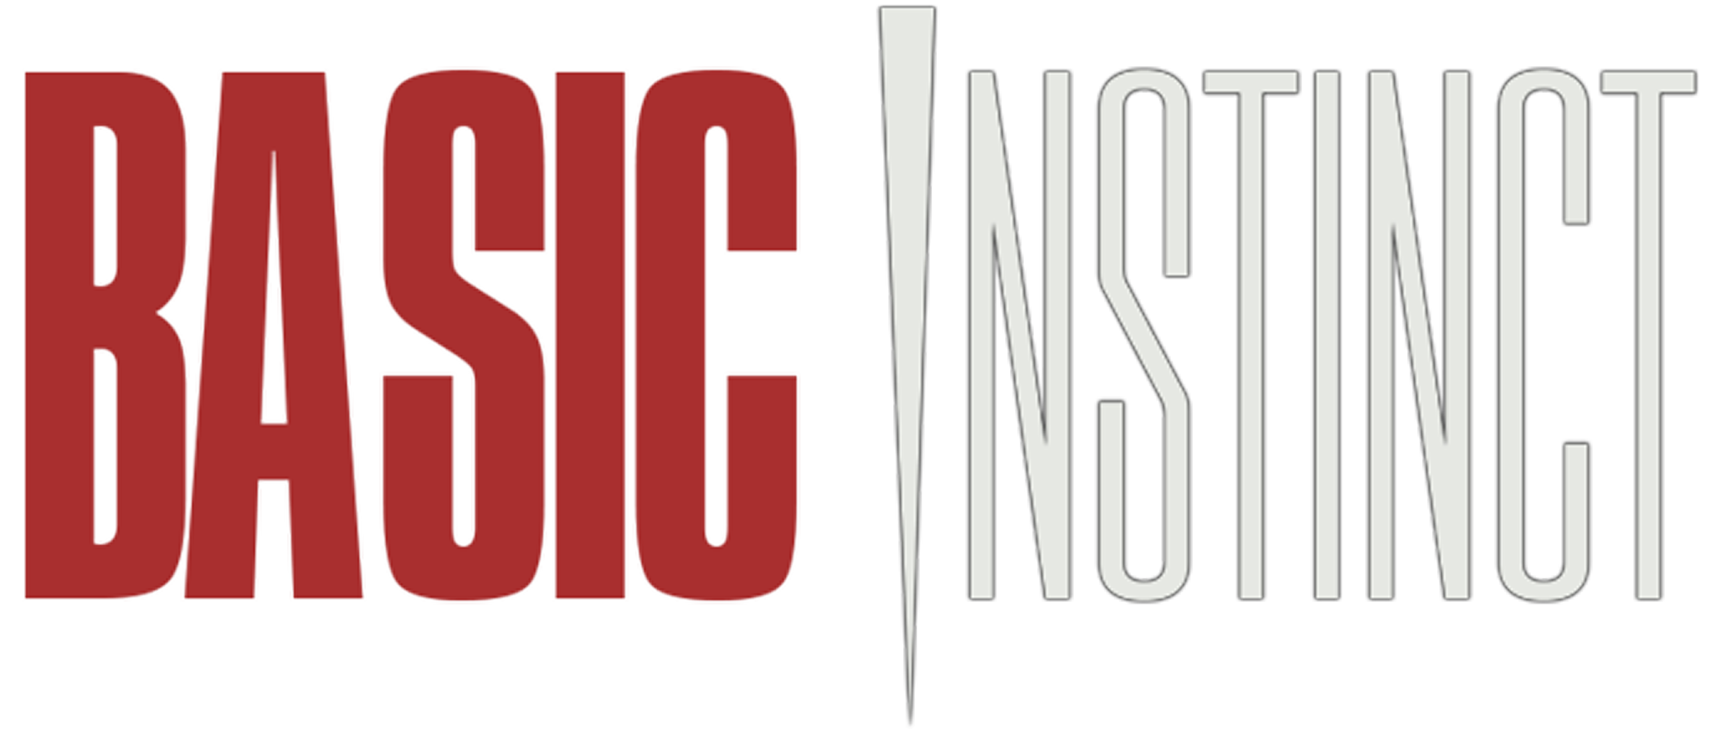 Watch Basic Instinct Free Online